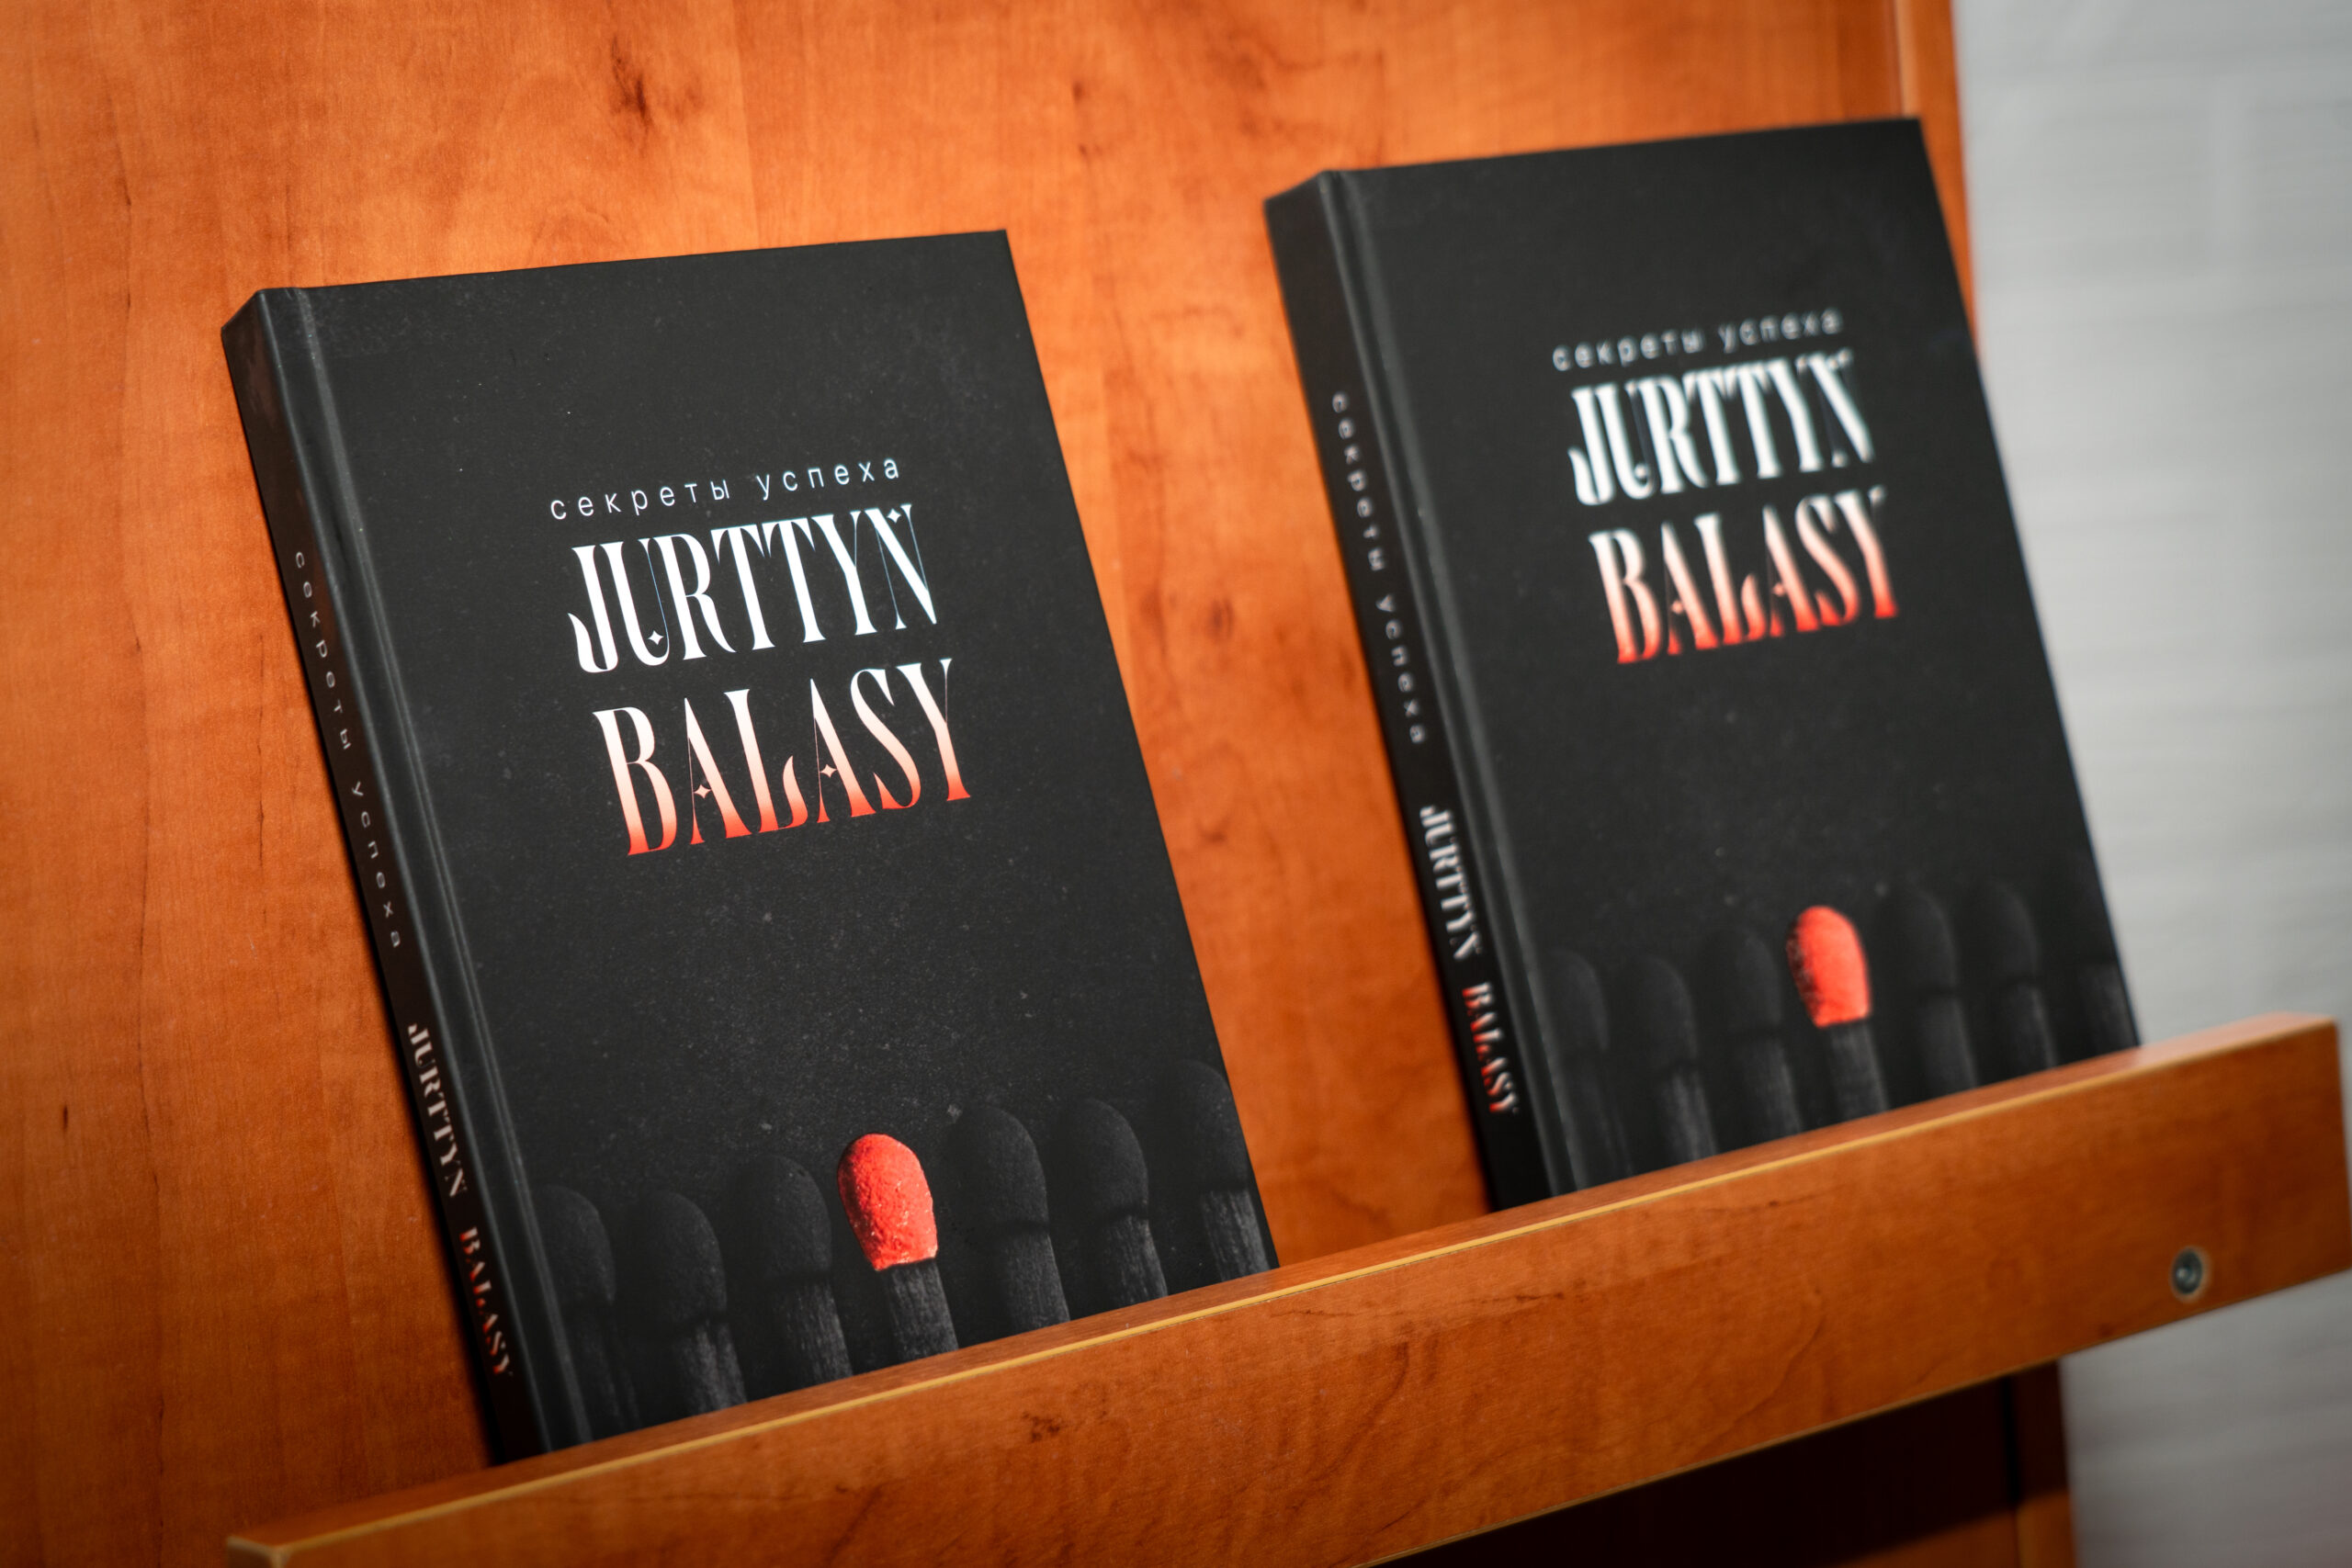  Опубликована первая мотивационная книга о важности образования «Секреты успеха Jūrttyñ balasy»